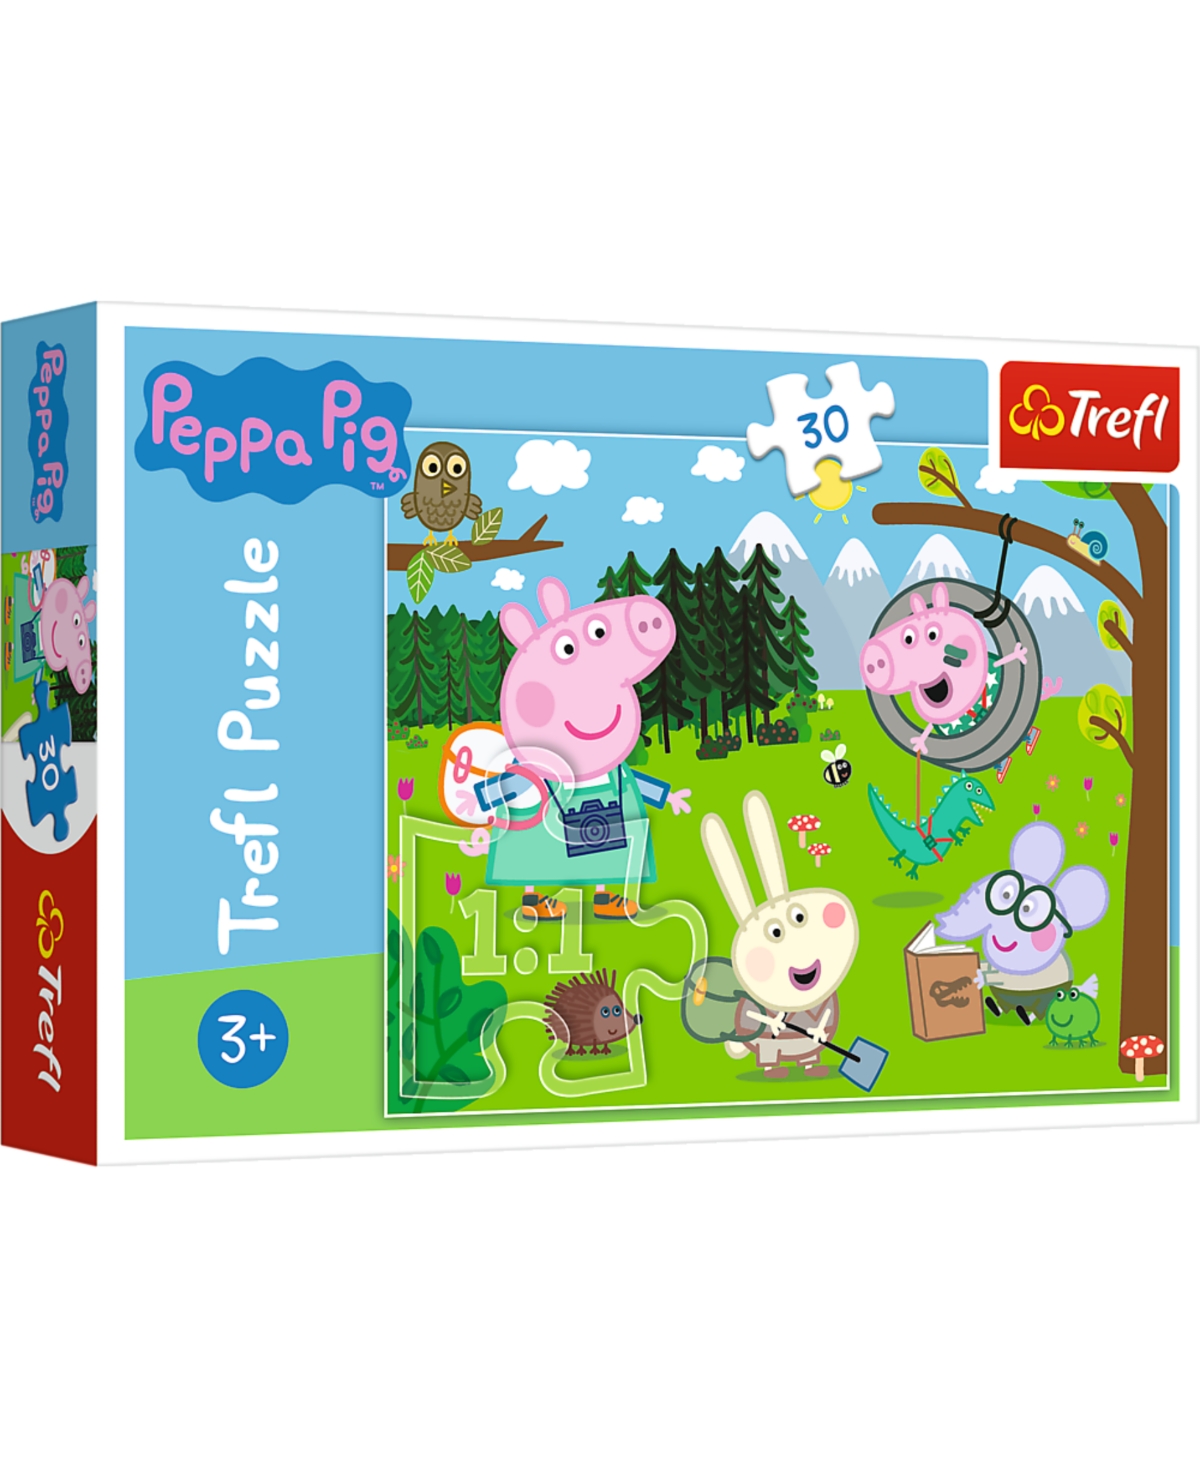 Trefl Kids' Peppa Pig 30 Piece Puzzle In Multi